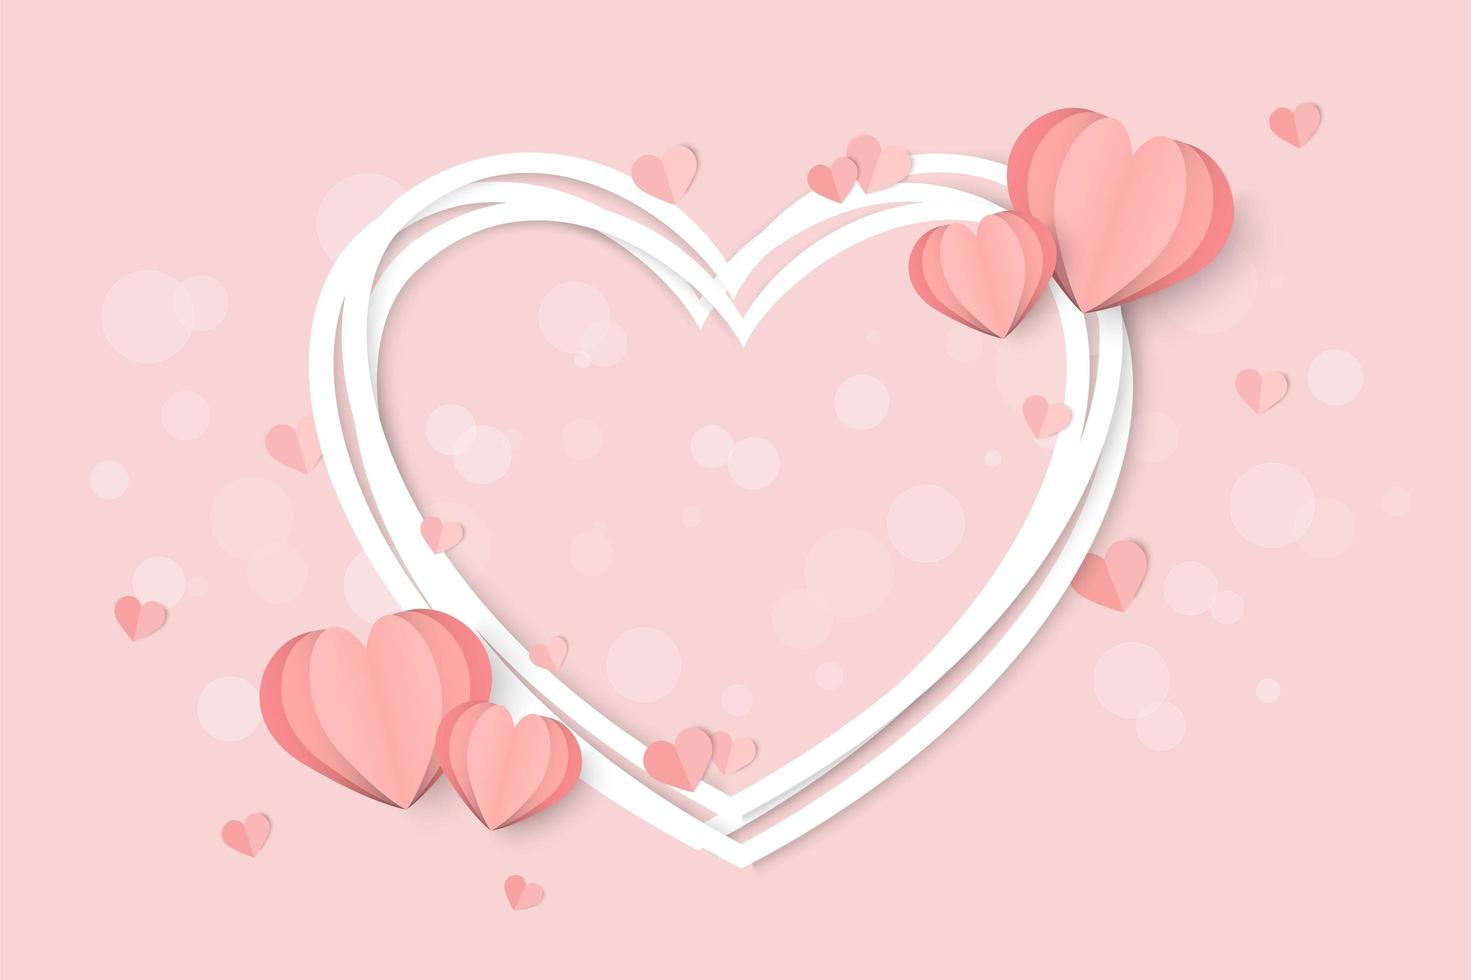 Dia dos namorados rosa com moldura de coração branco e formas de coração vetor